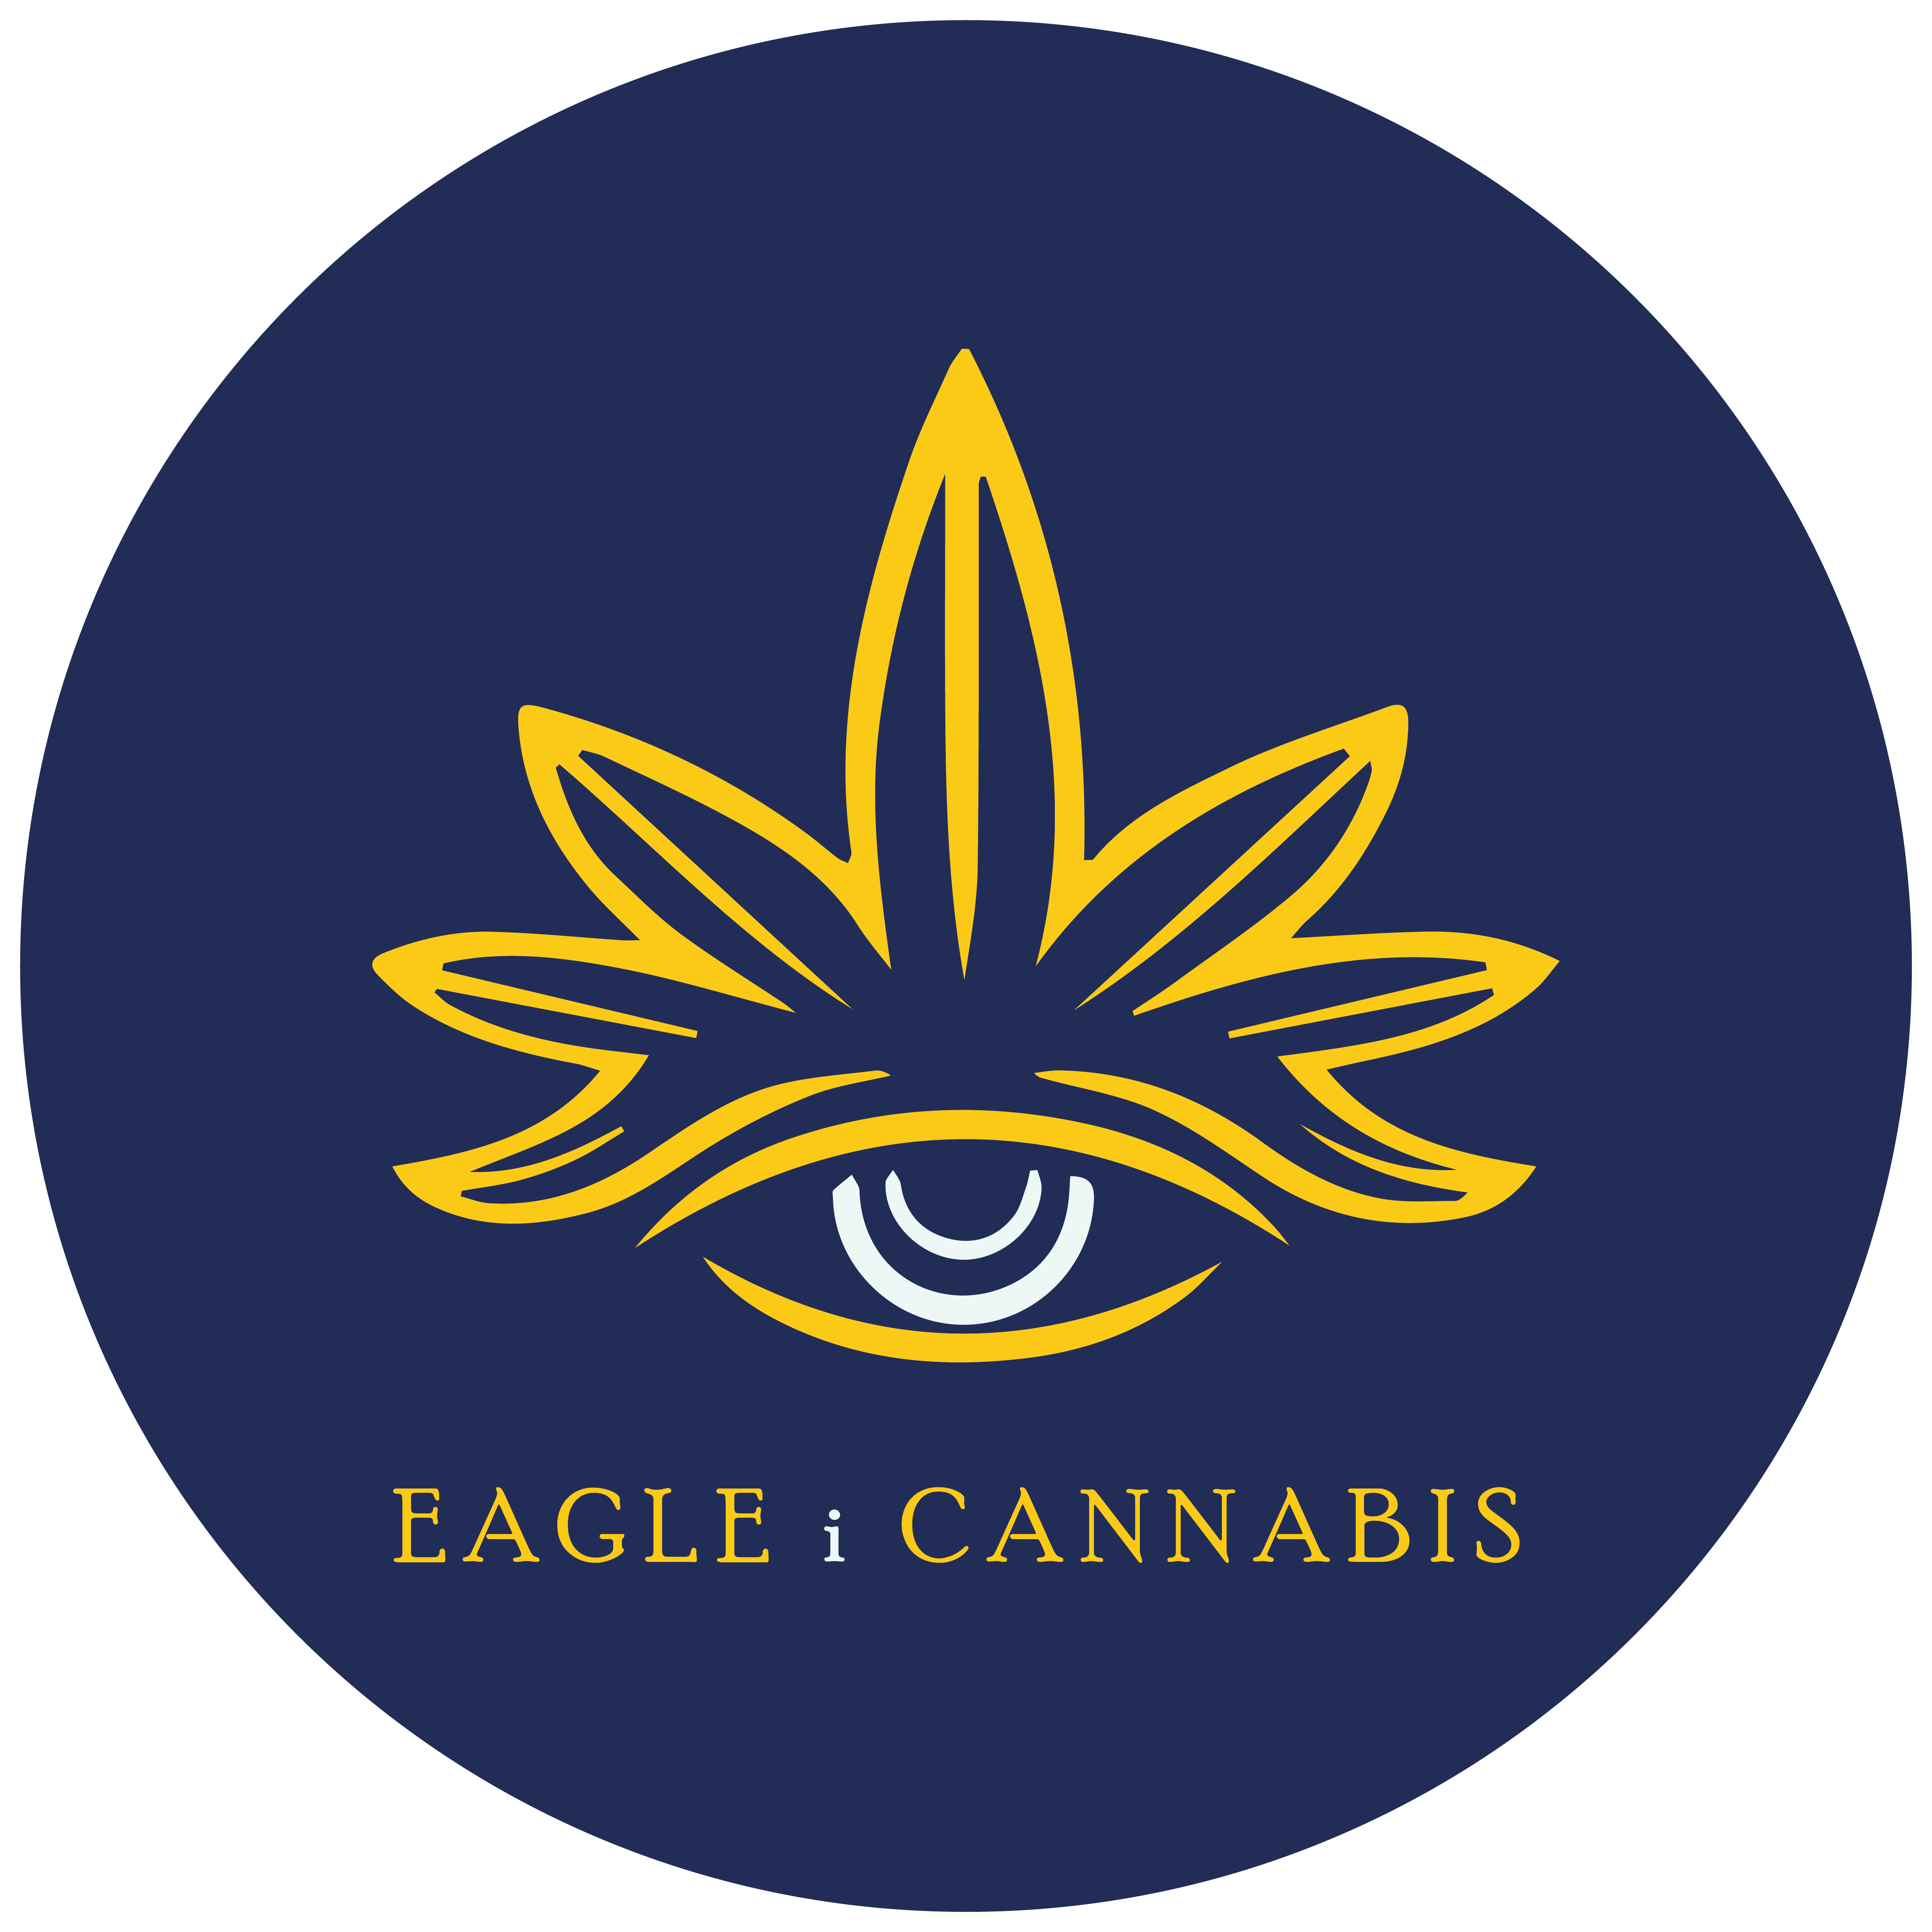 Eagle i Cannabis